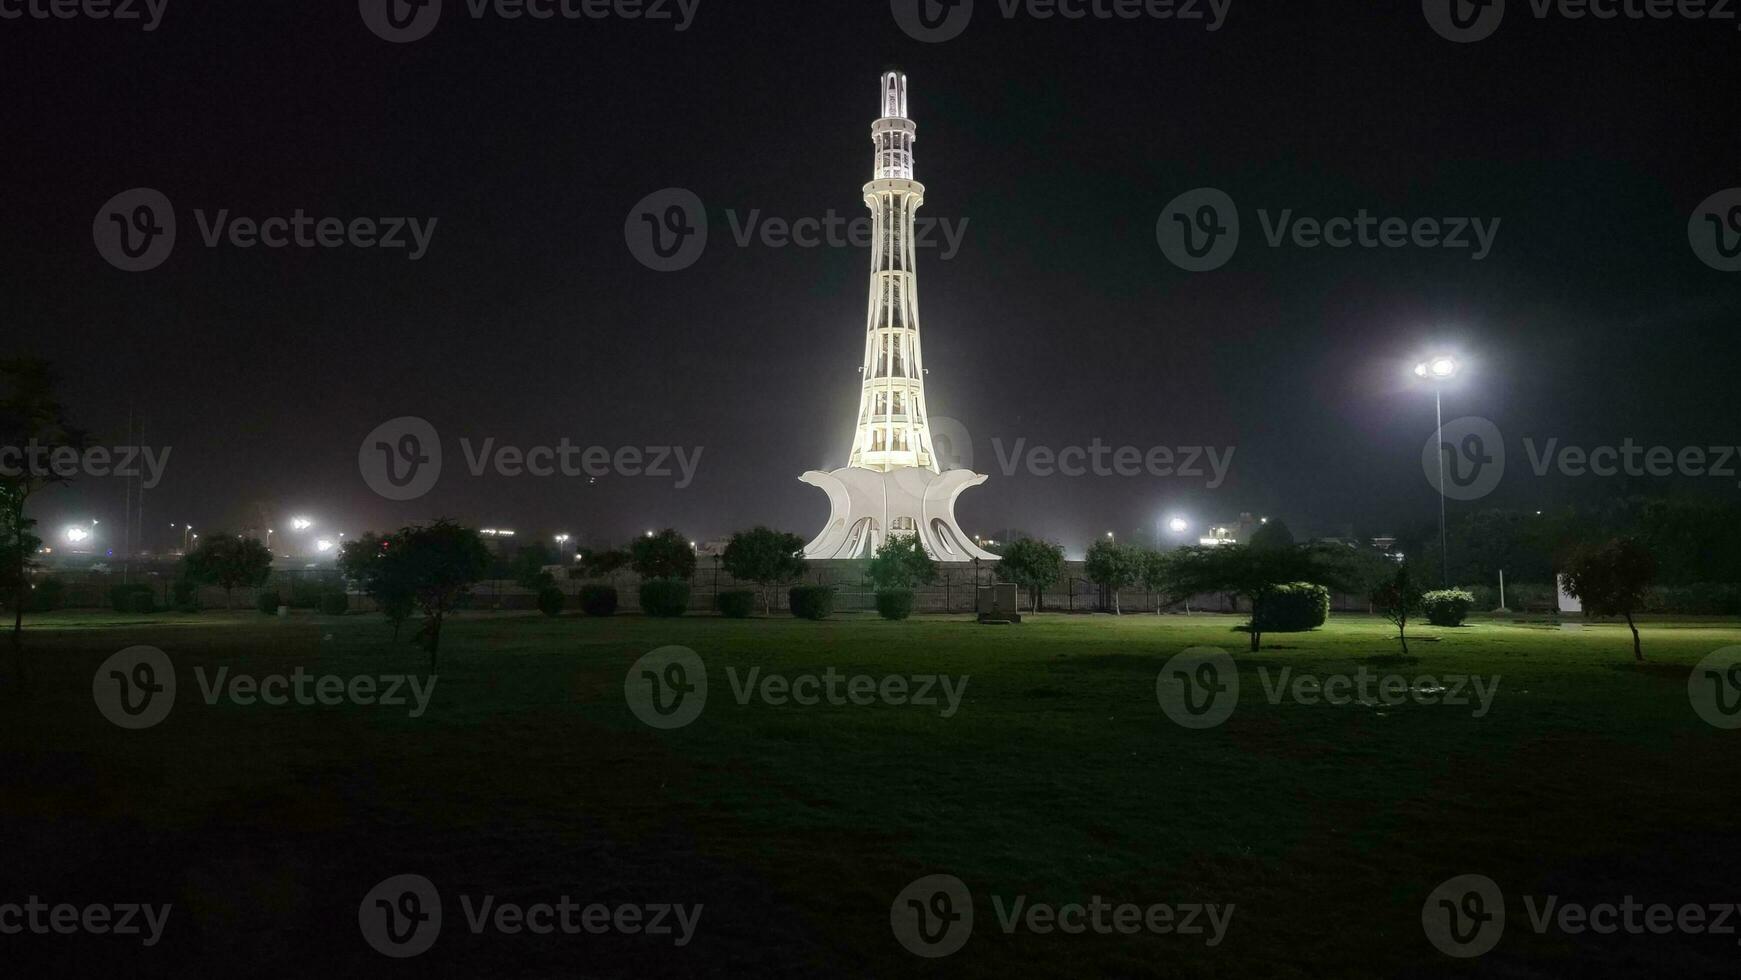 Mann Pakistan zeigen es ist Schönheit beim Nacht foto